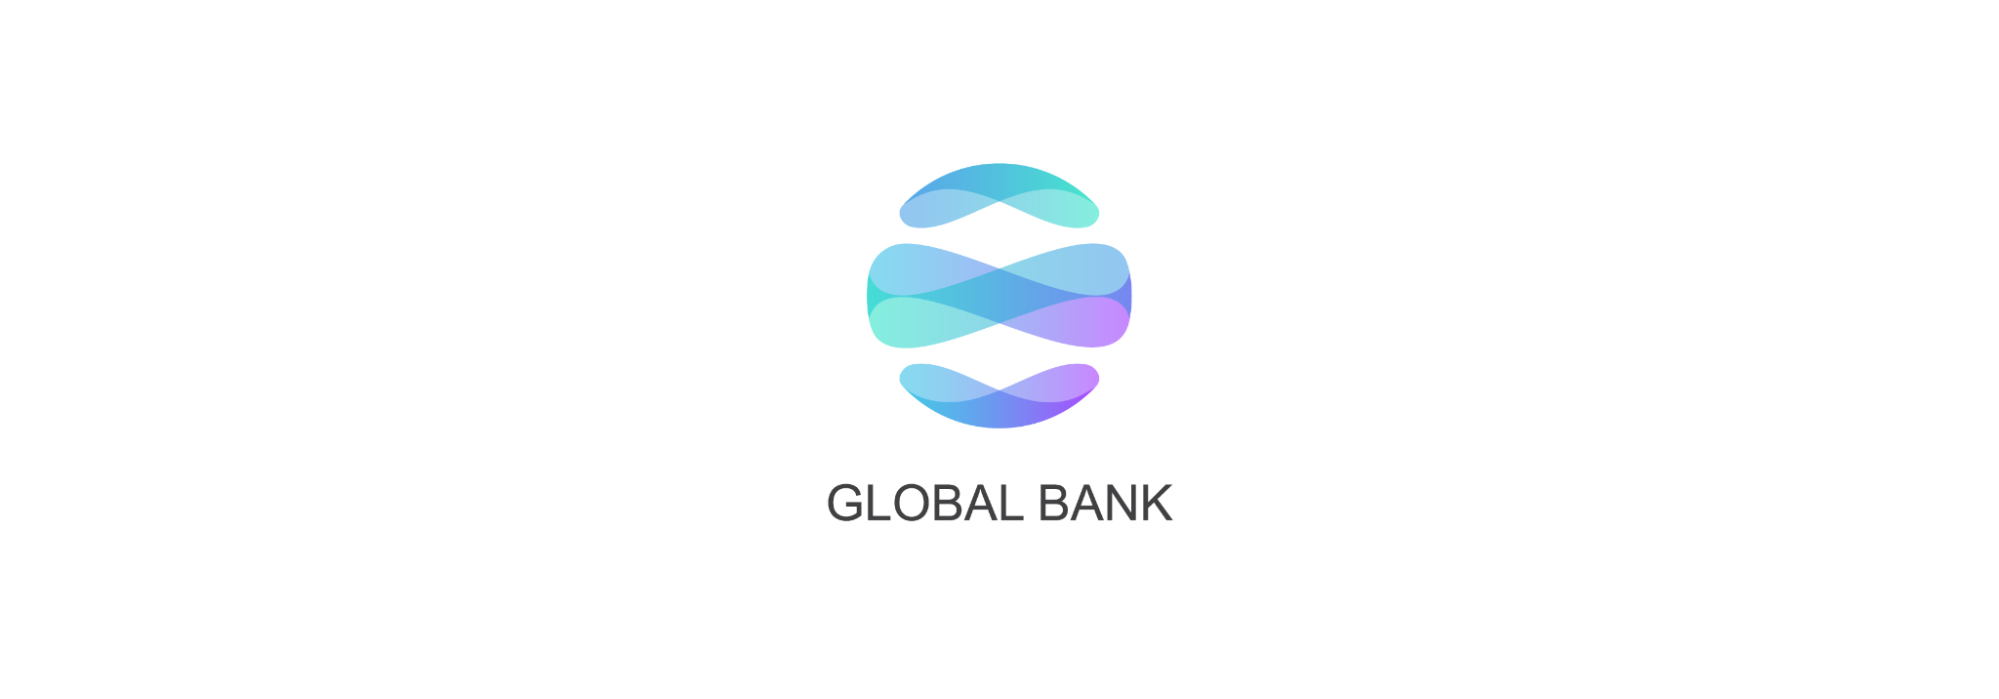 Global Bank logo